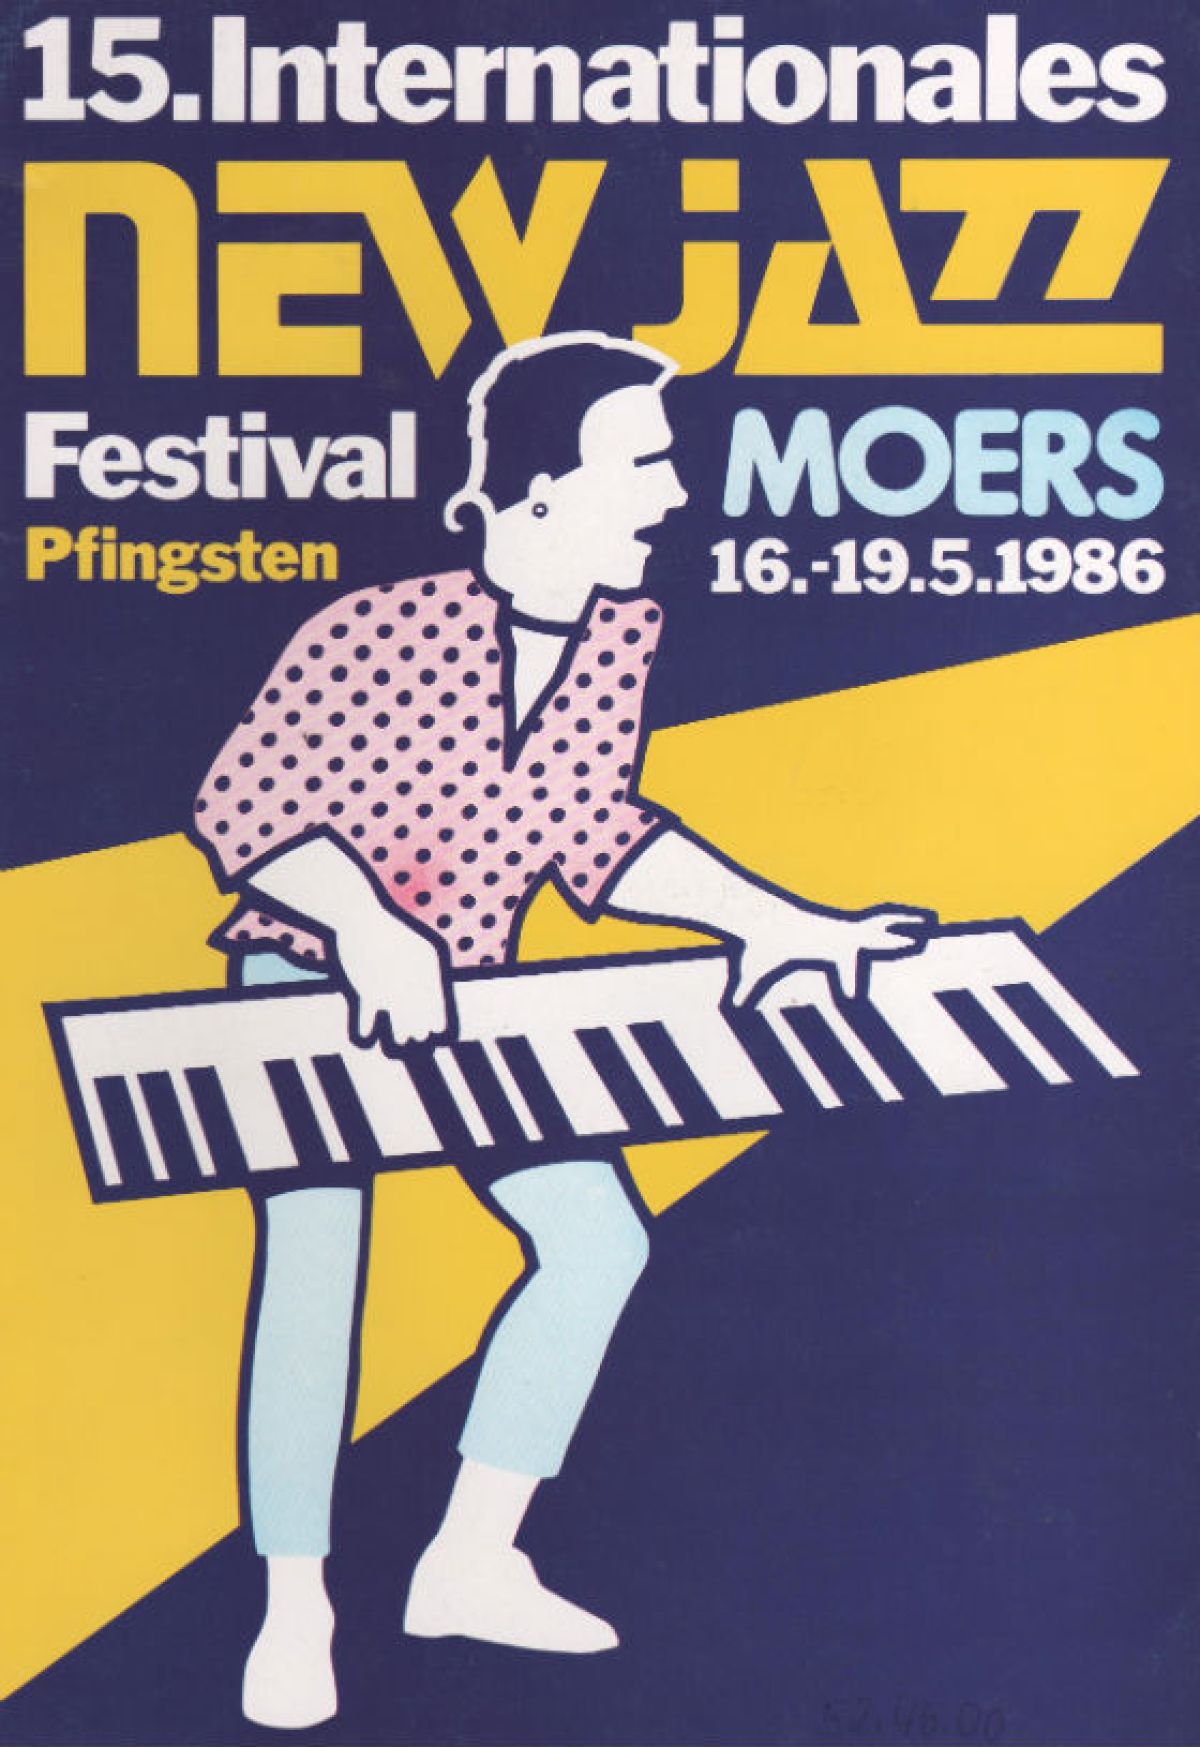 Festival-Plakat 1986